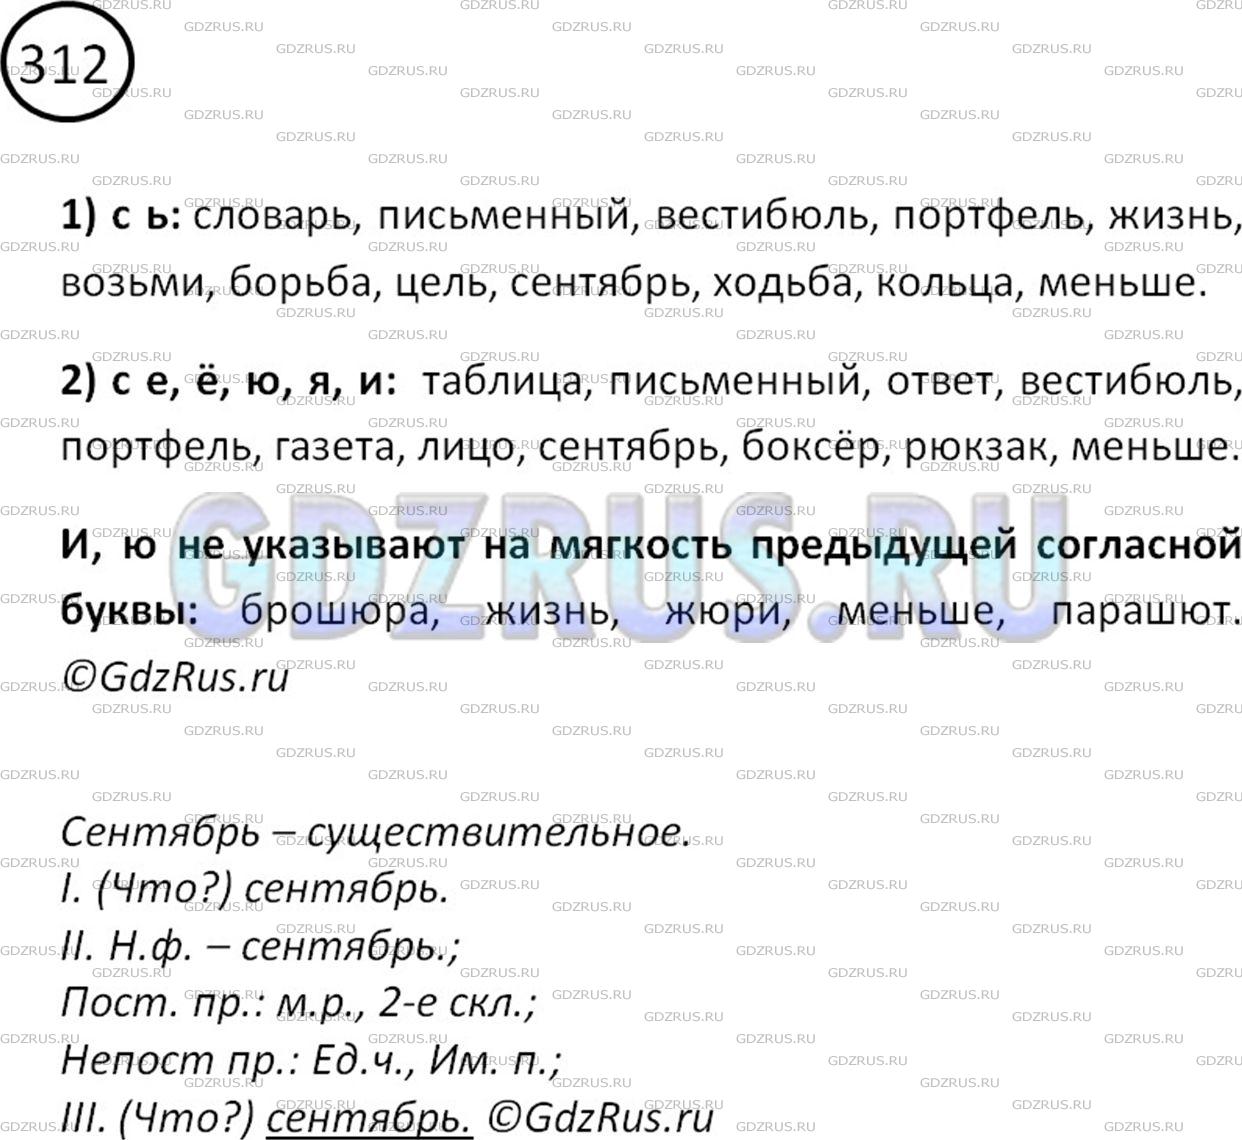 Фото решения 2: Номер №312 из ГДЗ по Русскому языку 5 класс: Ладыженская Т.А. 2012г.